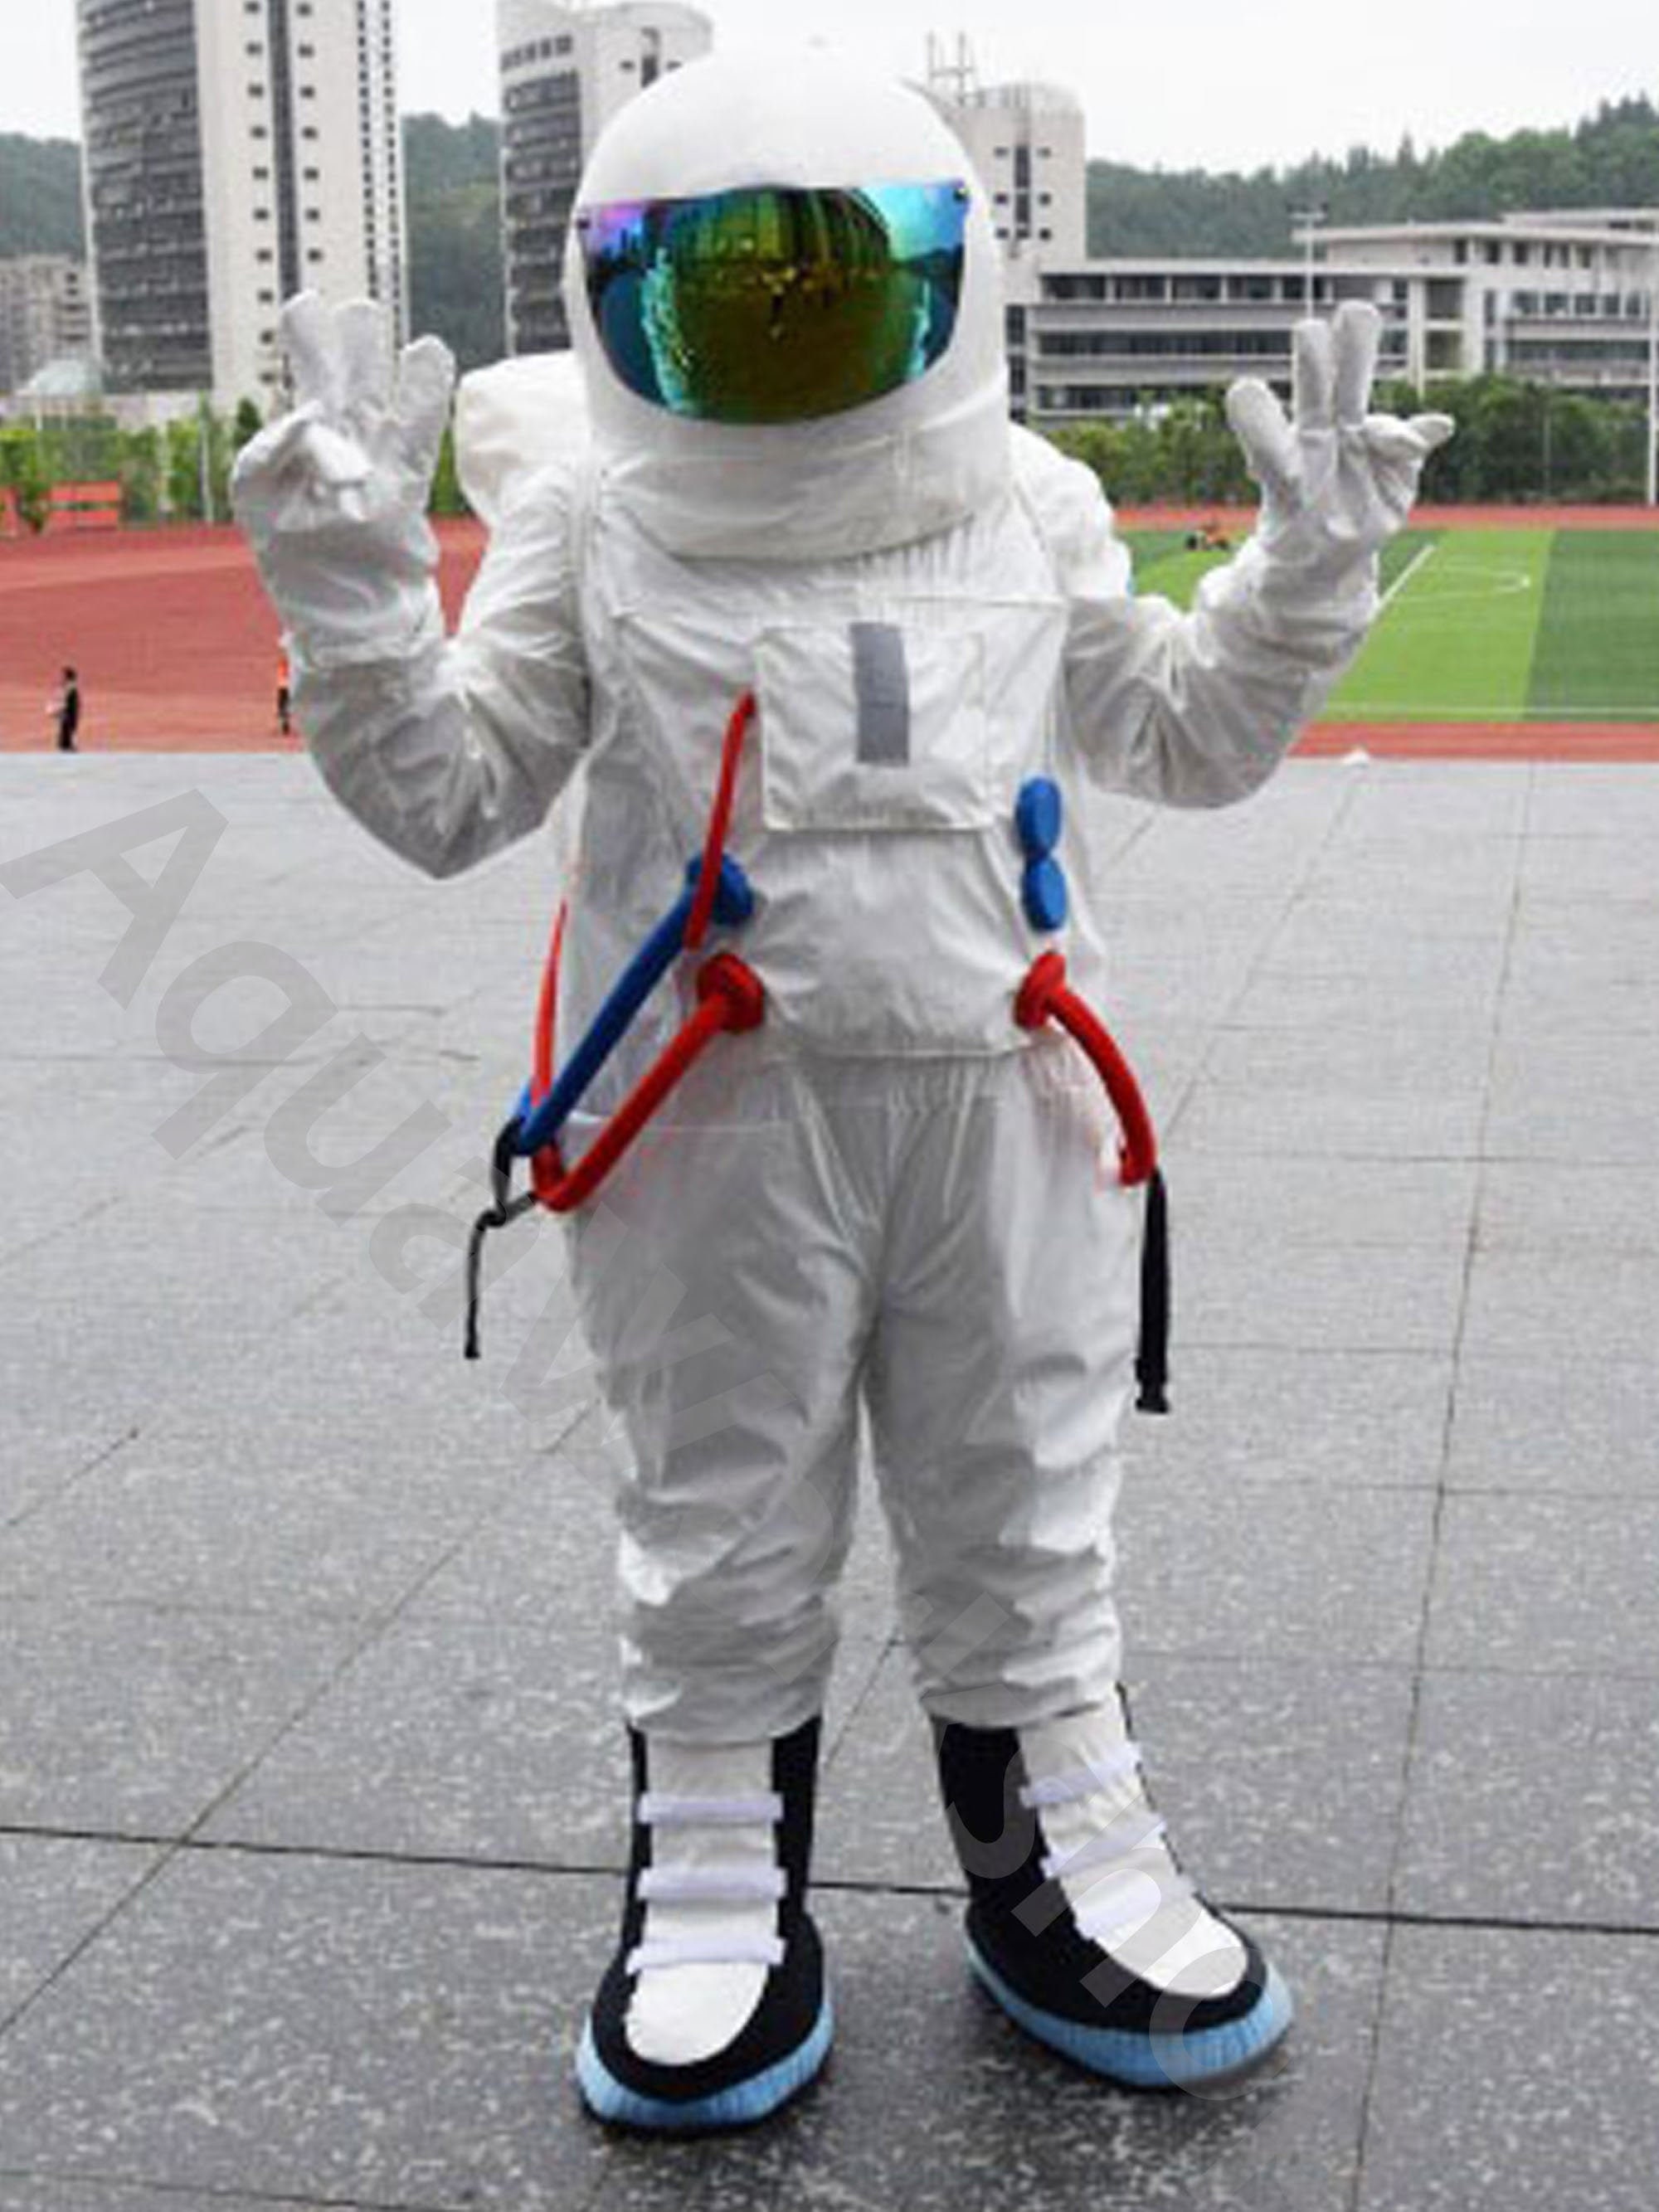 【限定特価】 Space suit astronaut halloween costume cosplay clothes for child